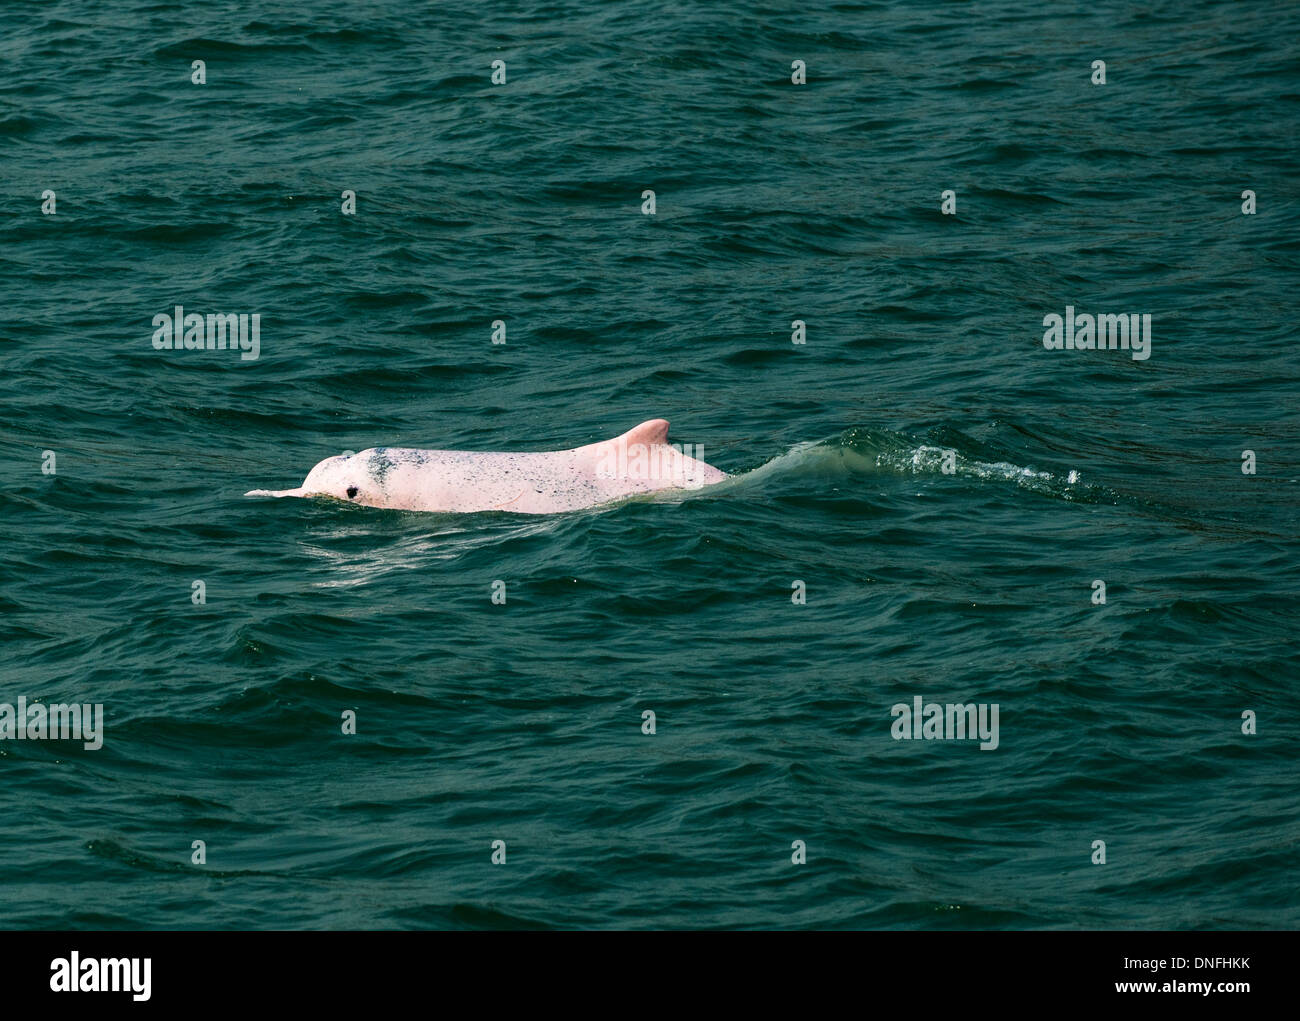 Les magnifiques dauphins blancs chinois nageant dans la mer ouverte au nord de l'île de Lantau à Hong Kong. Banque D'Images